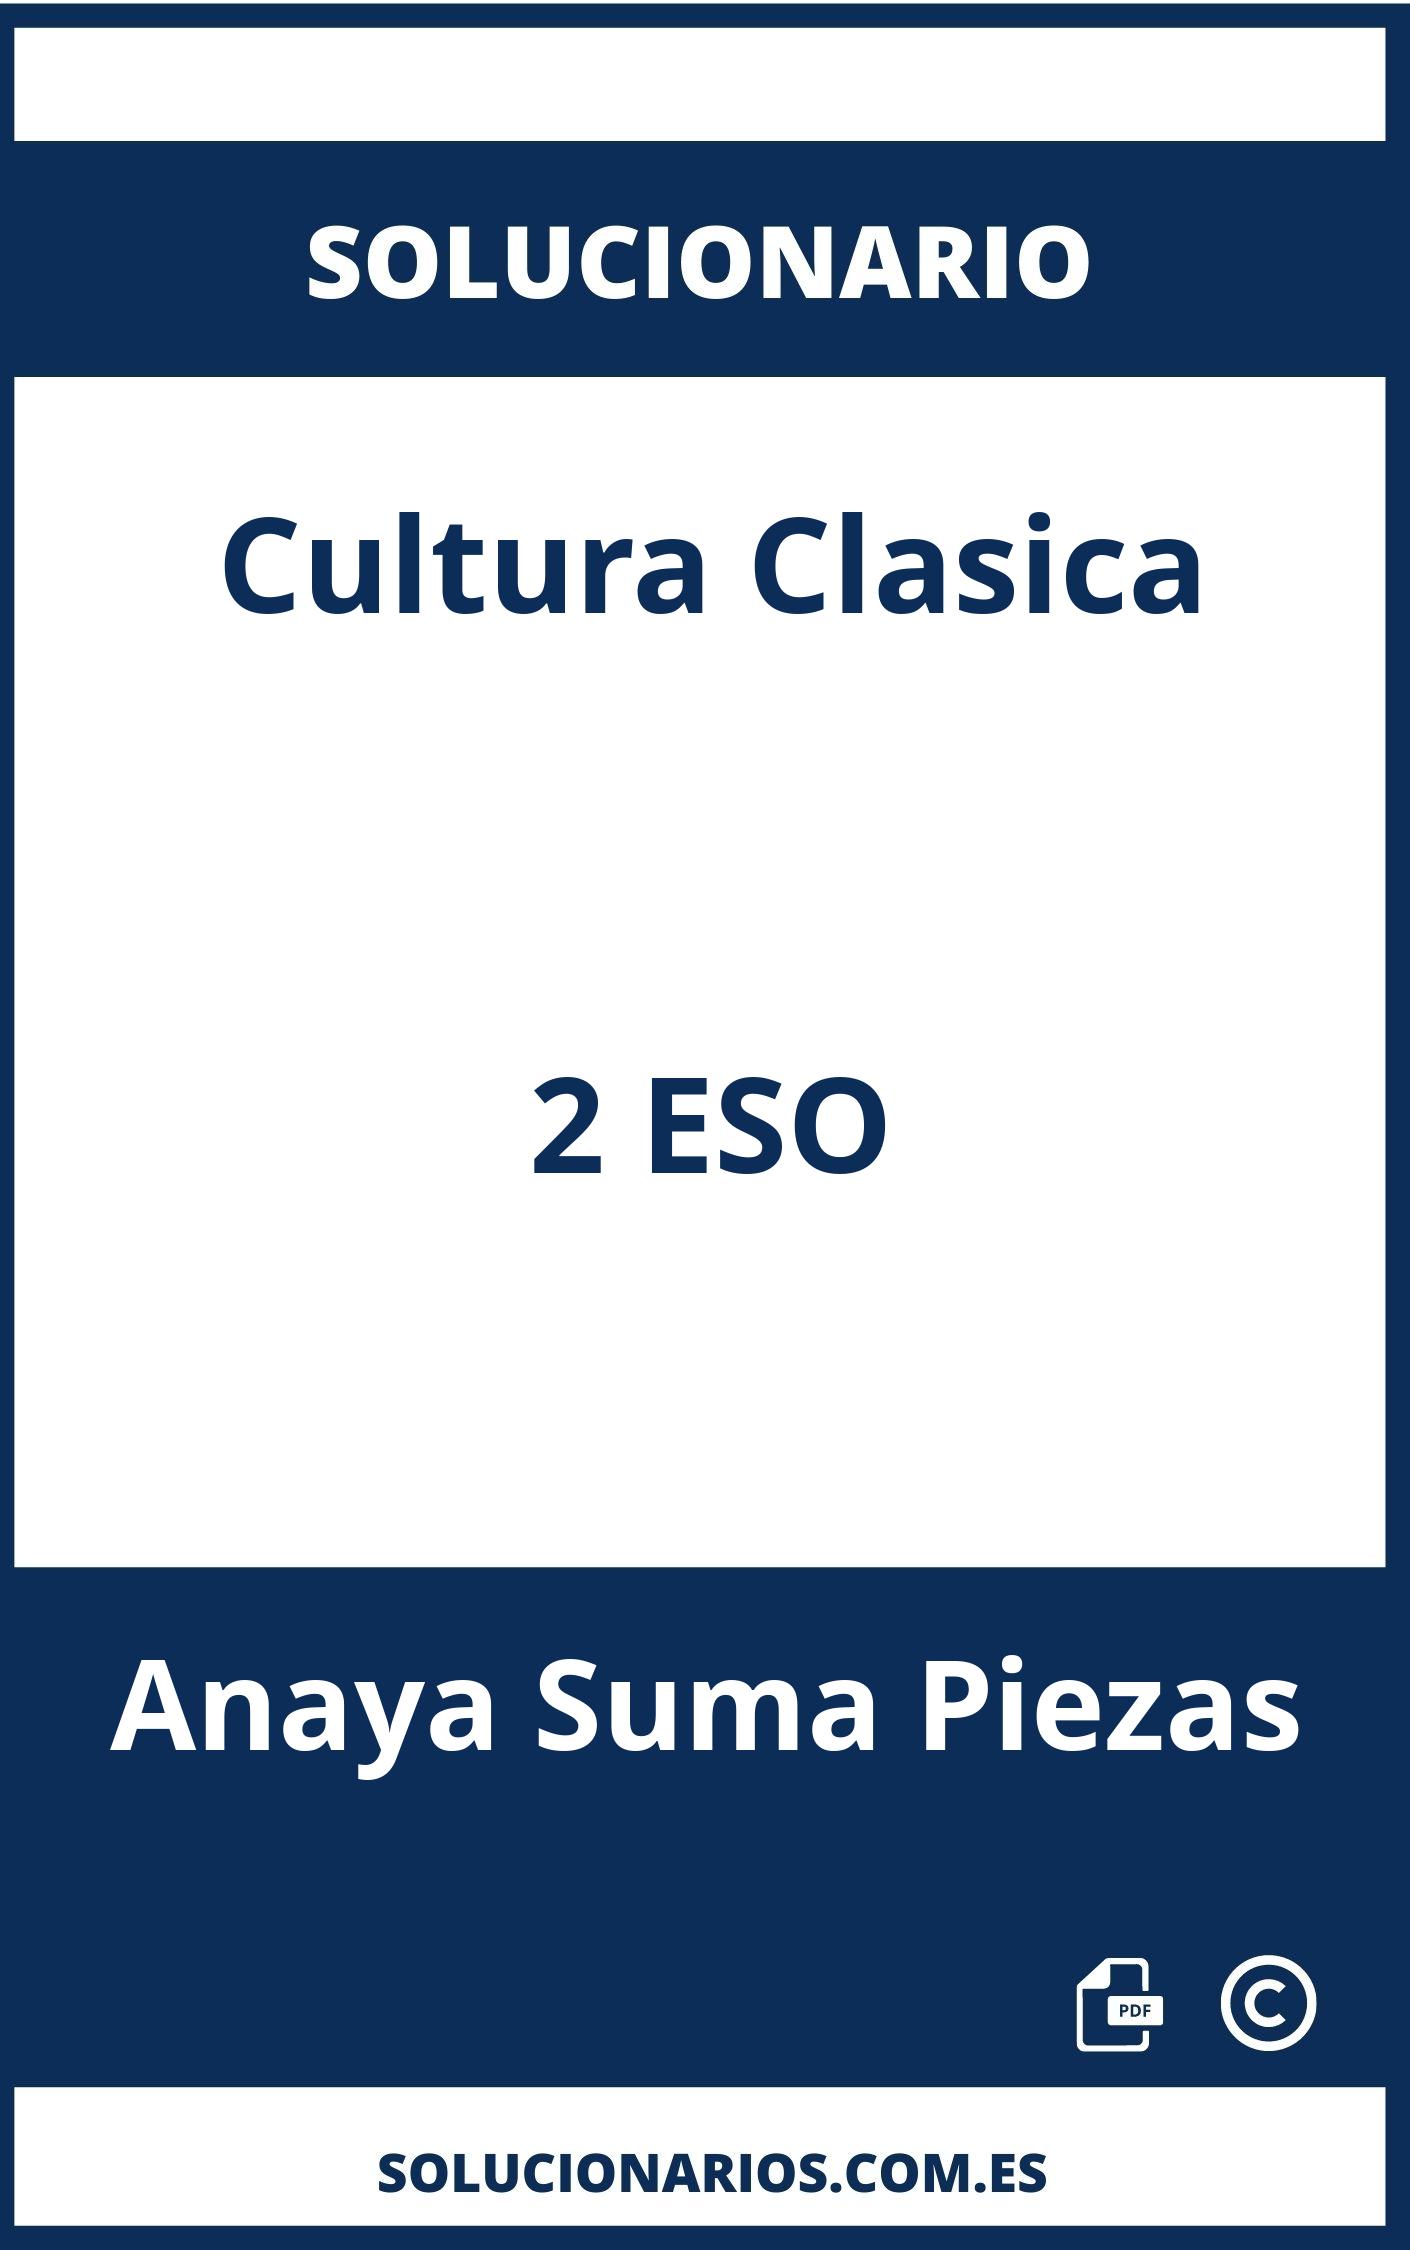 Solucionario Cultura Clasica 2 ESO Anaya Suma Piezas